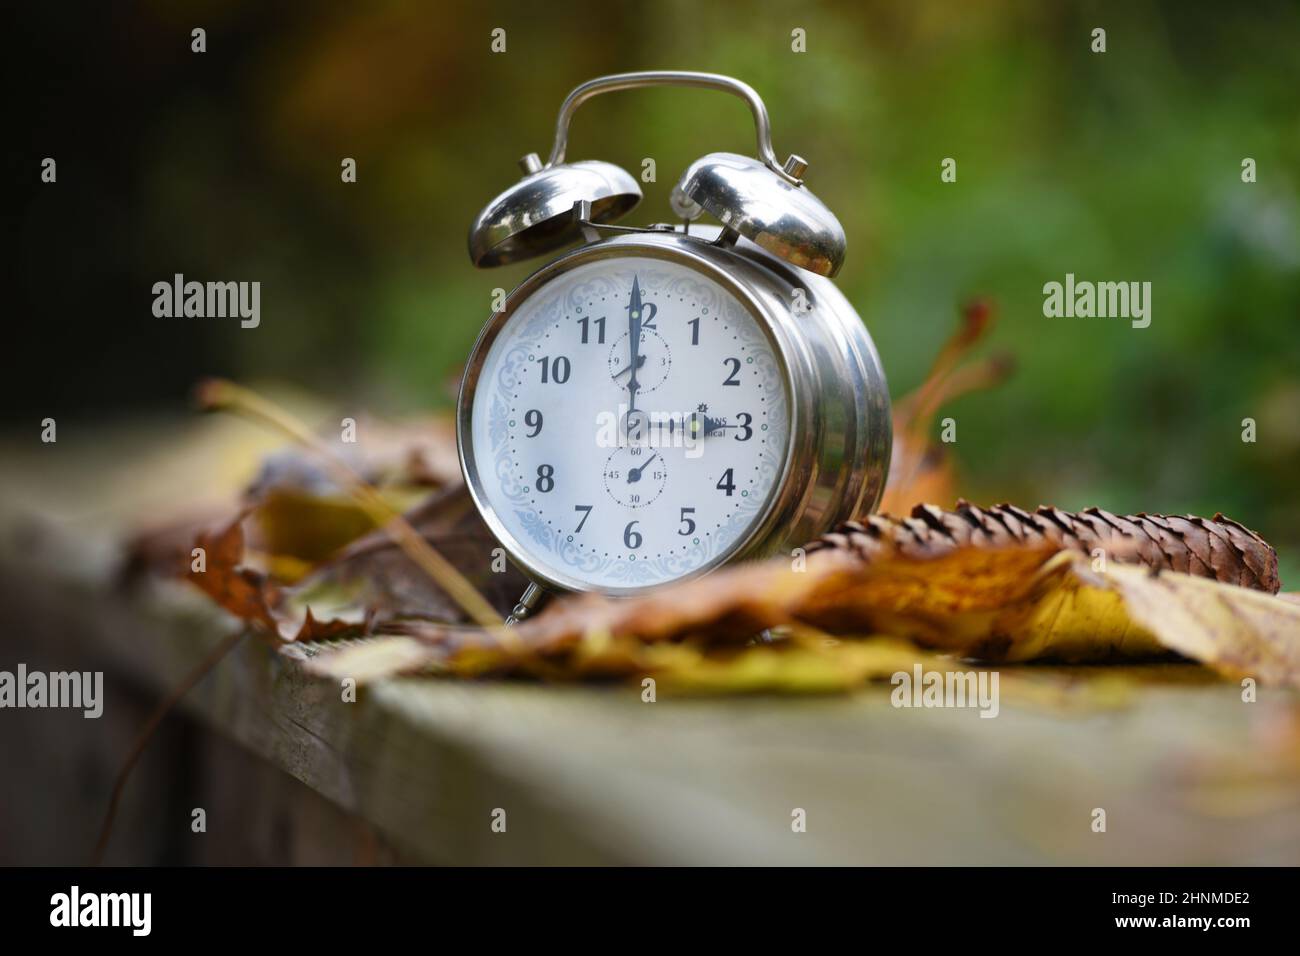 Zeitumstellung von Sommzeit auf Winterzeit im Herbst, Wecker im Laub - Time change from summer to winter time in autumn, alarm clock in the leaves Stock Photo